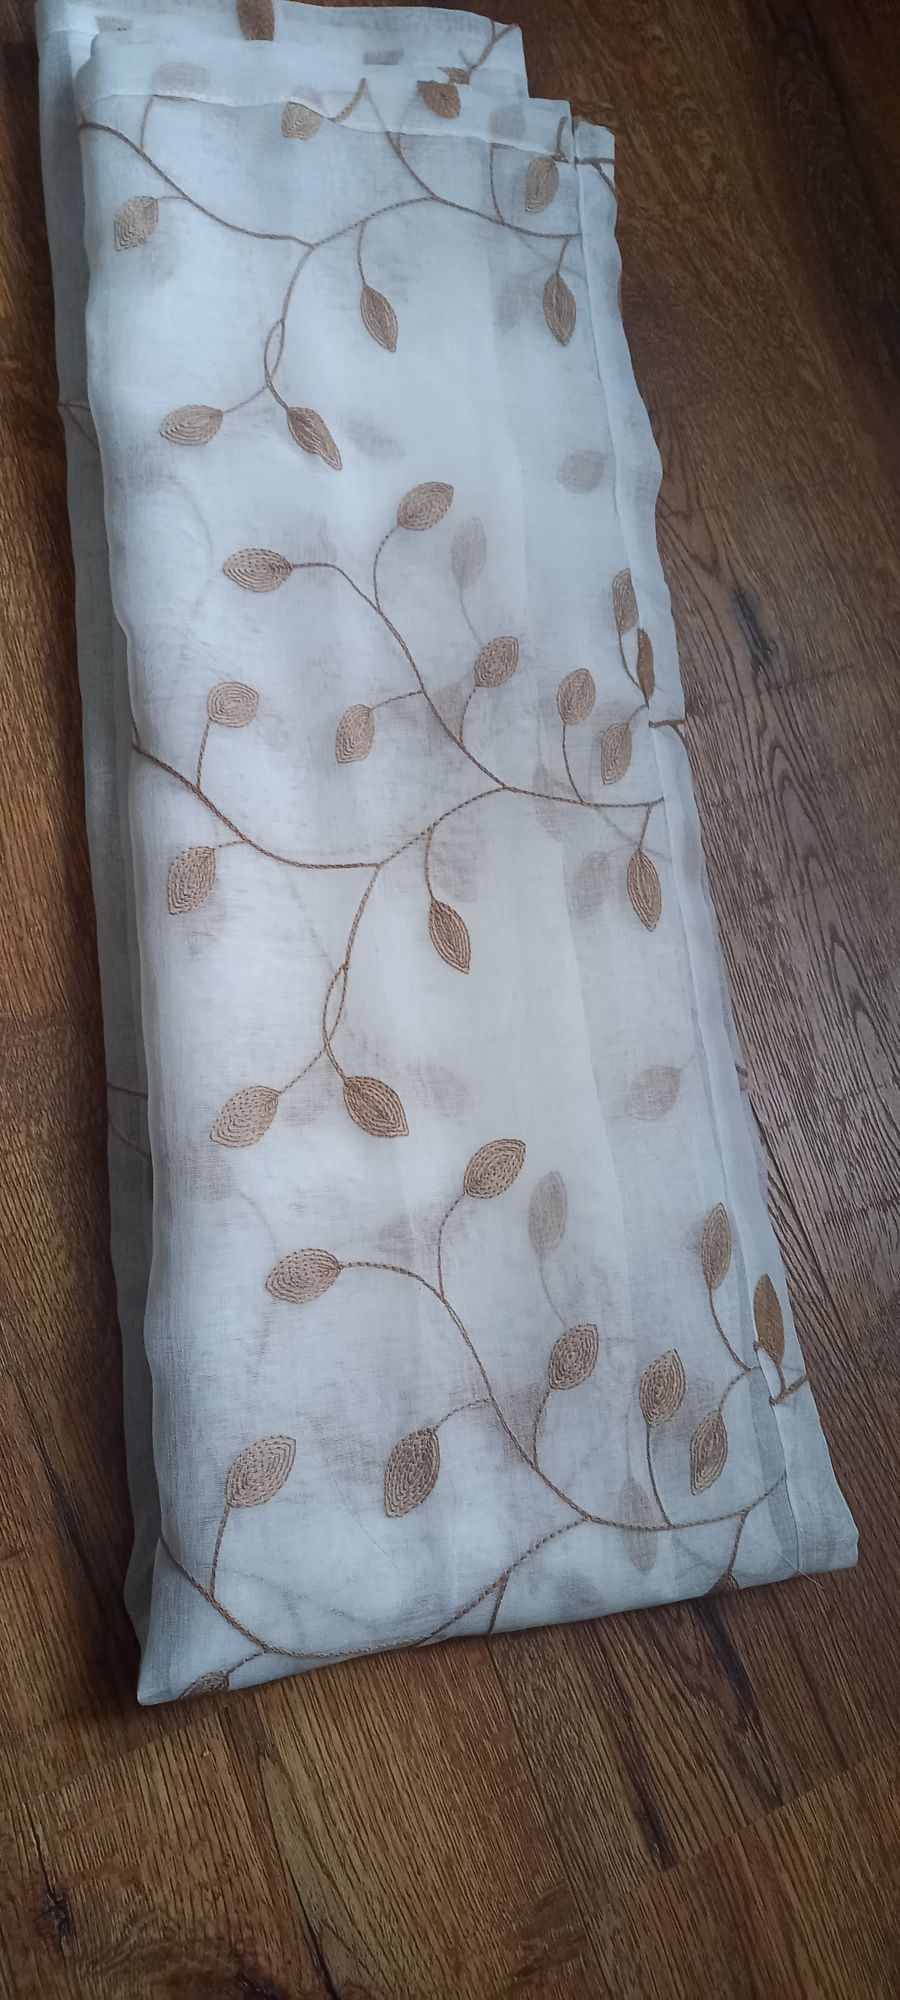 Zasłony firanki komplet przezroczyste haftowane liście 148 cm x 140 cm